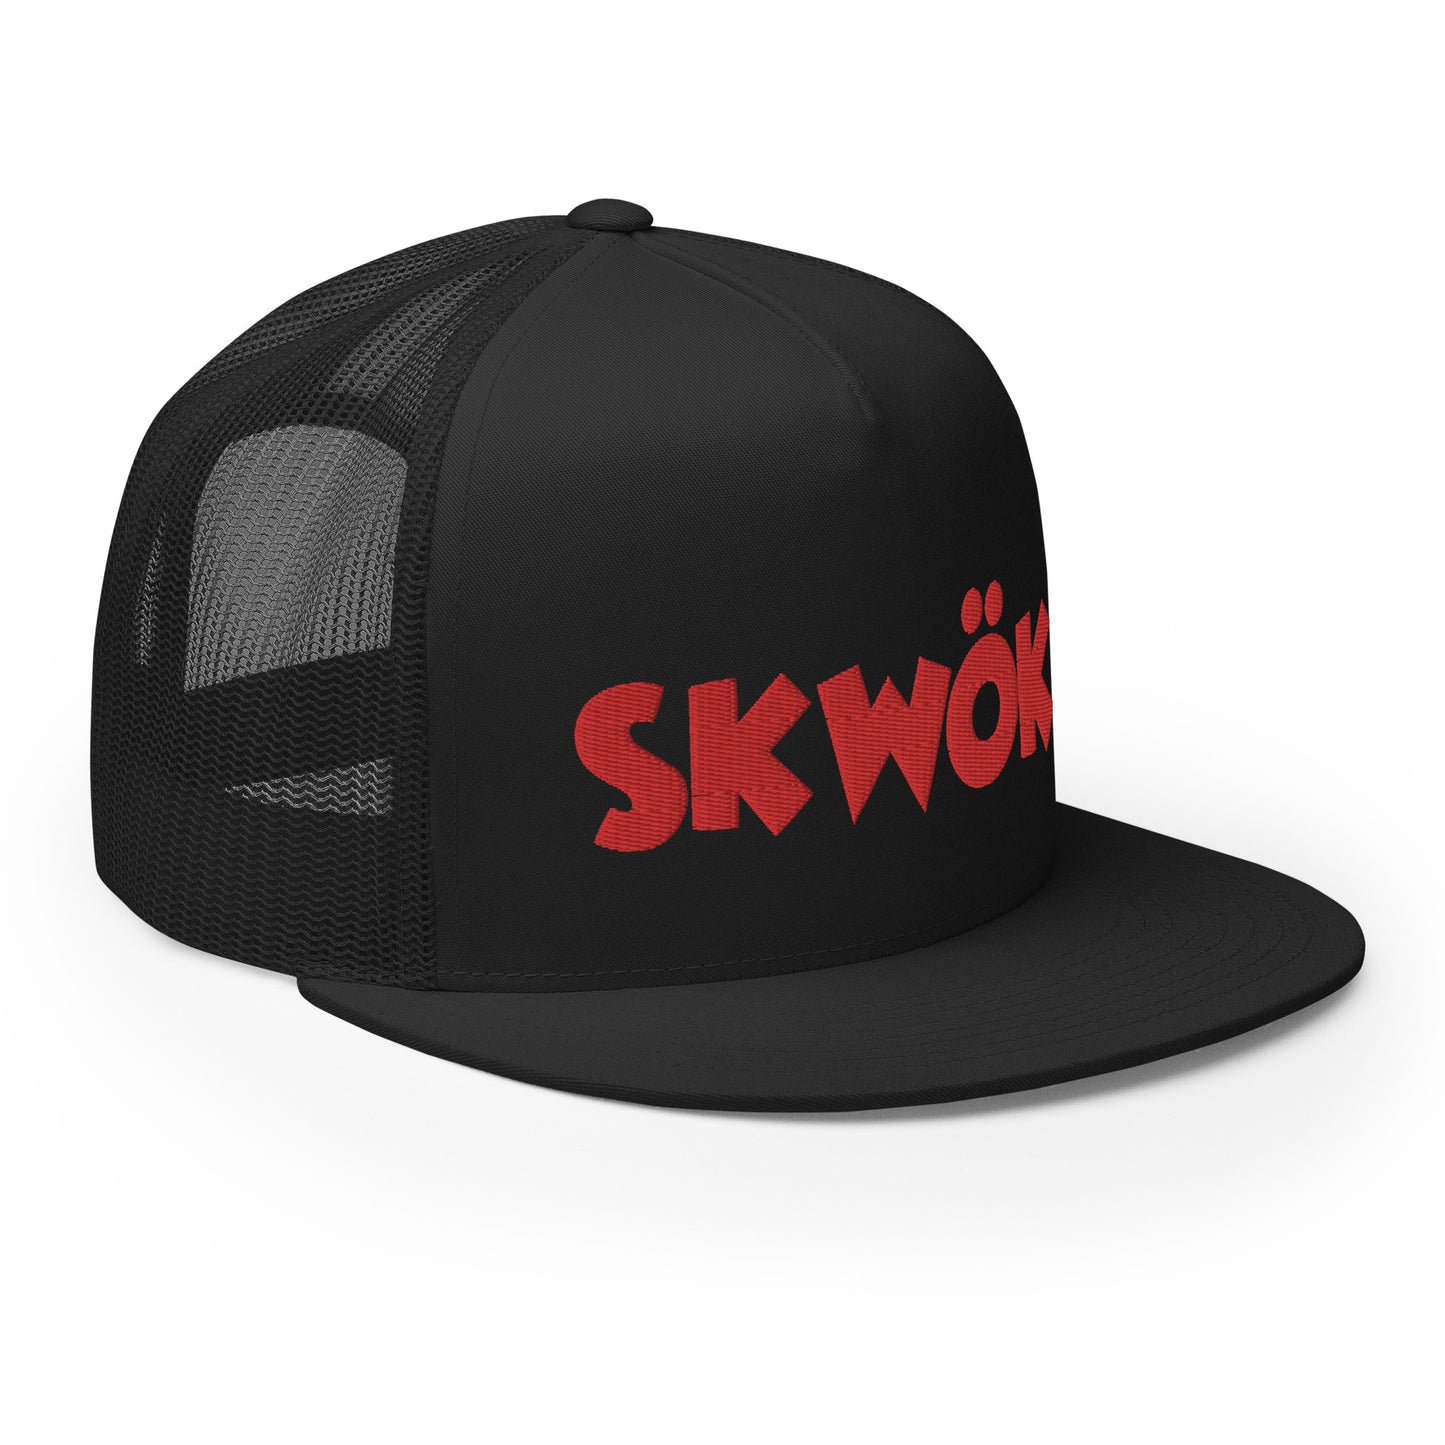 Skwok Brand / Hat / Trucker Cap / OG Logo / 3D Puff / Black / Red